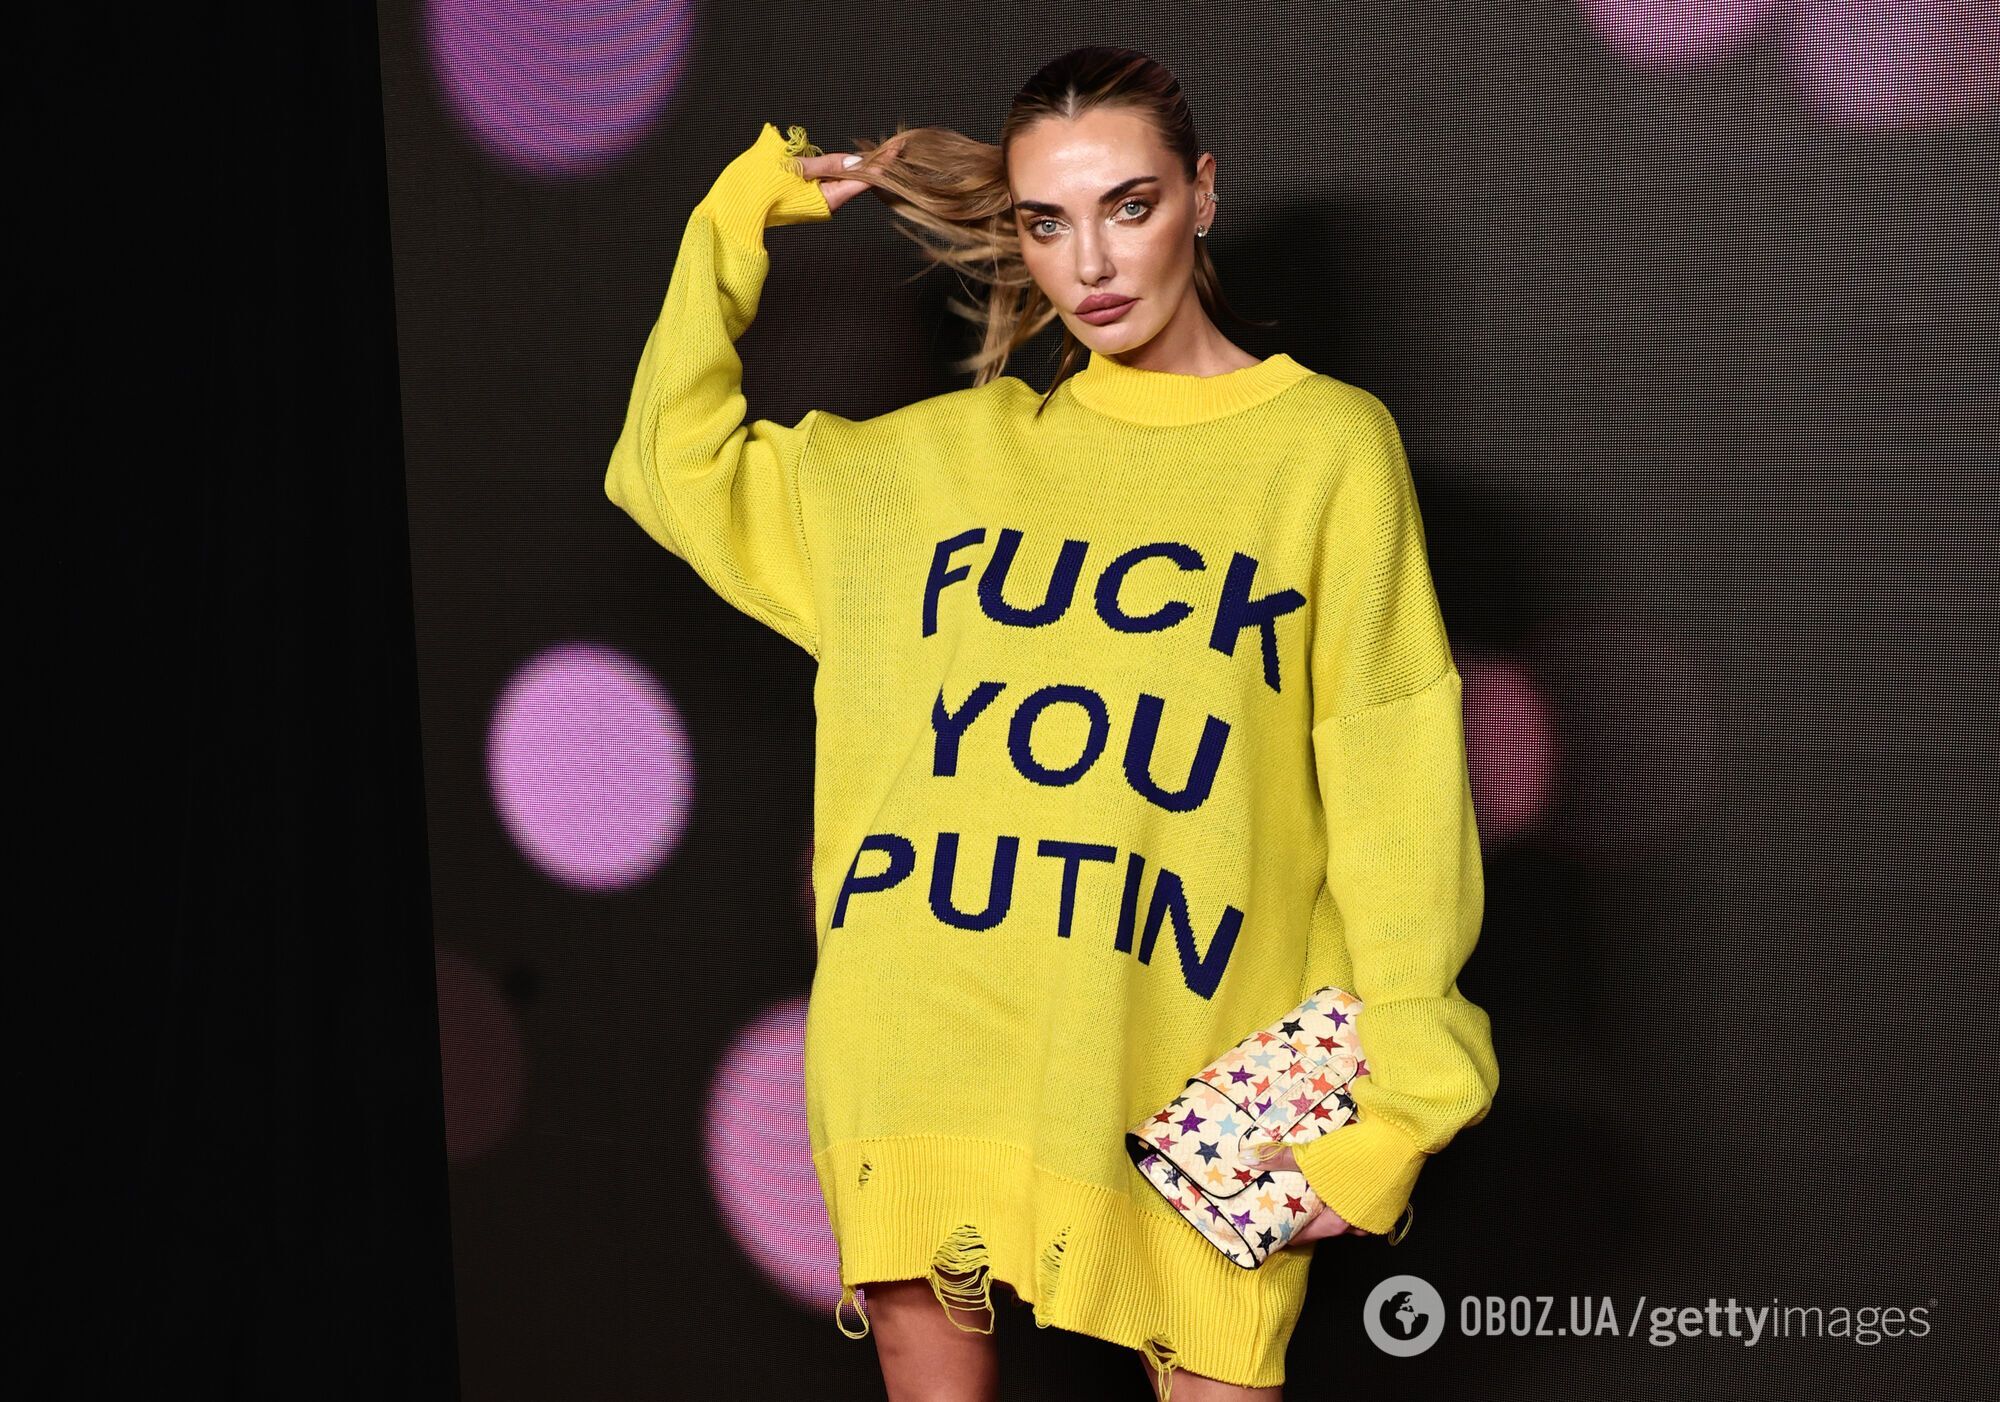 Супермодель Алина Байкова нецензурно обратилась к Путину с красной дорожки благодаря красноречивому мини-платью. Фото